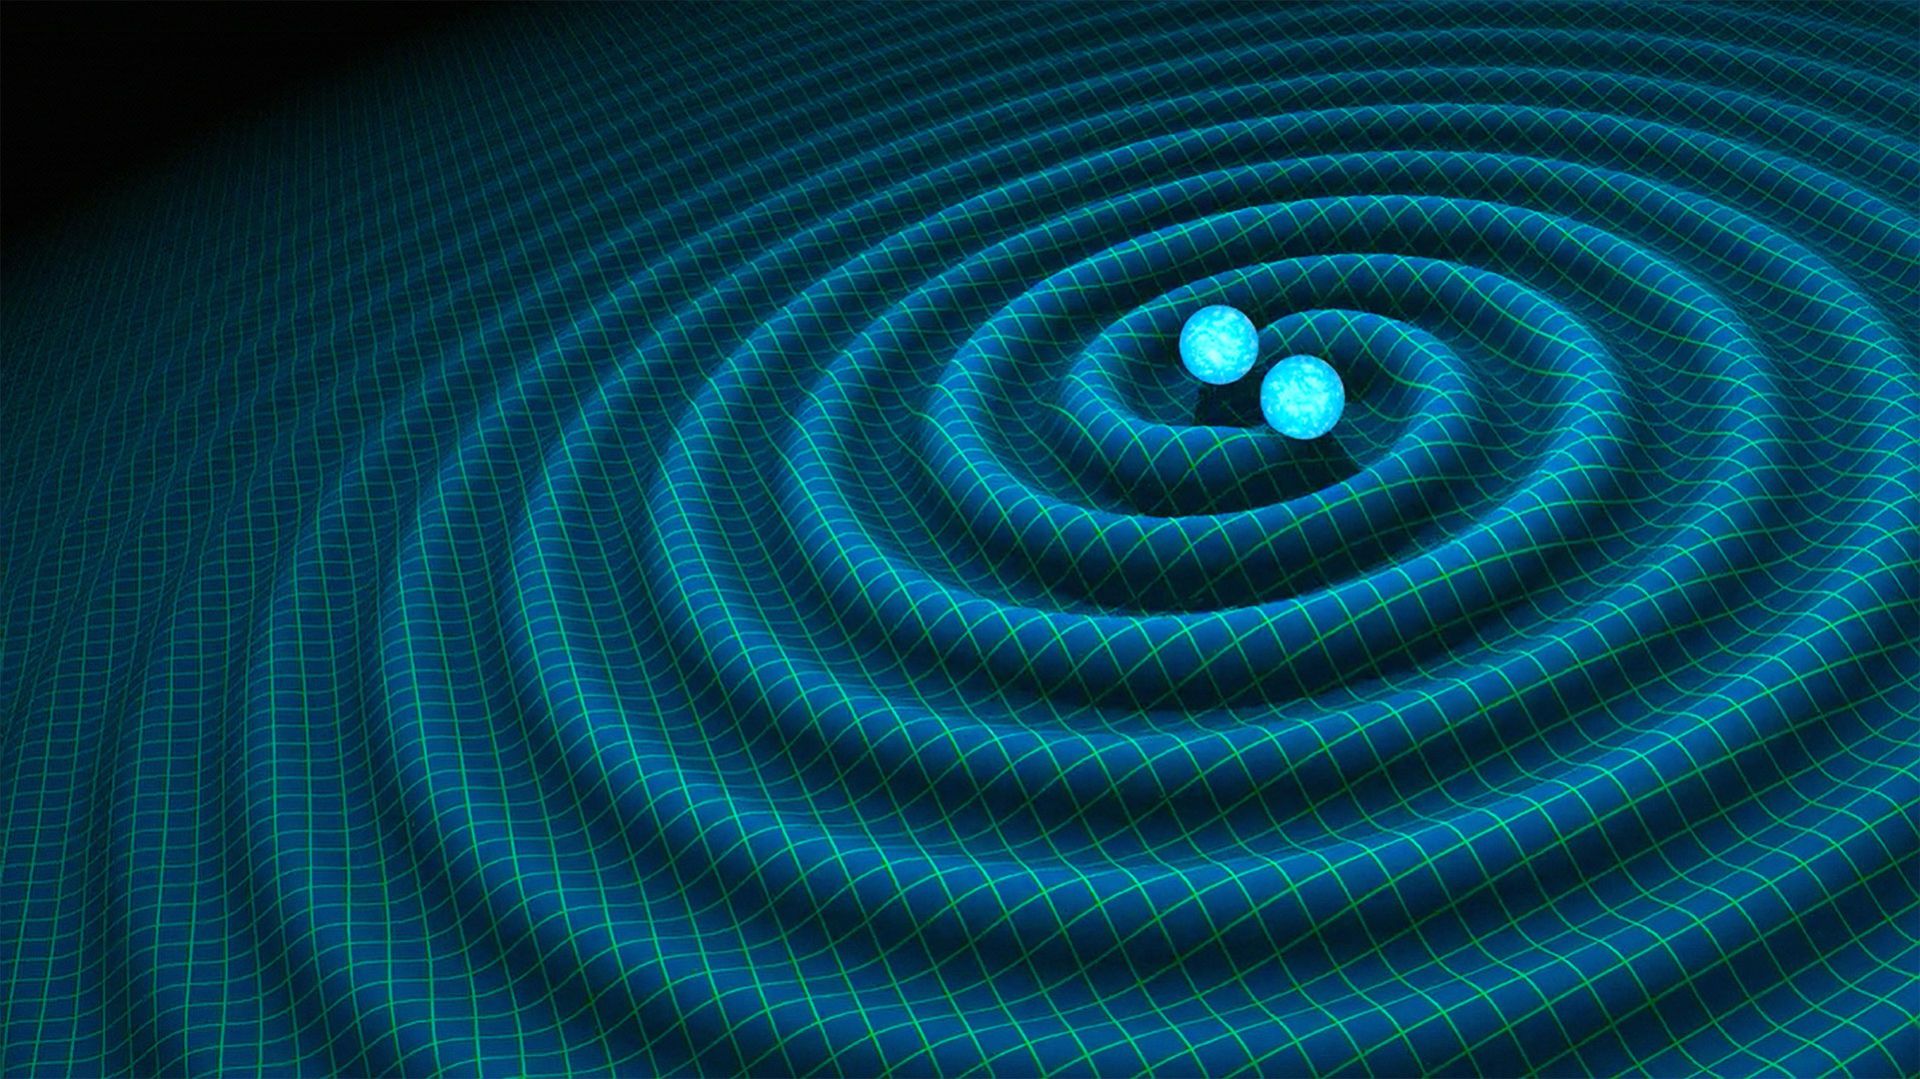 امواج گرانشی در بافت فضازمان